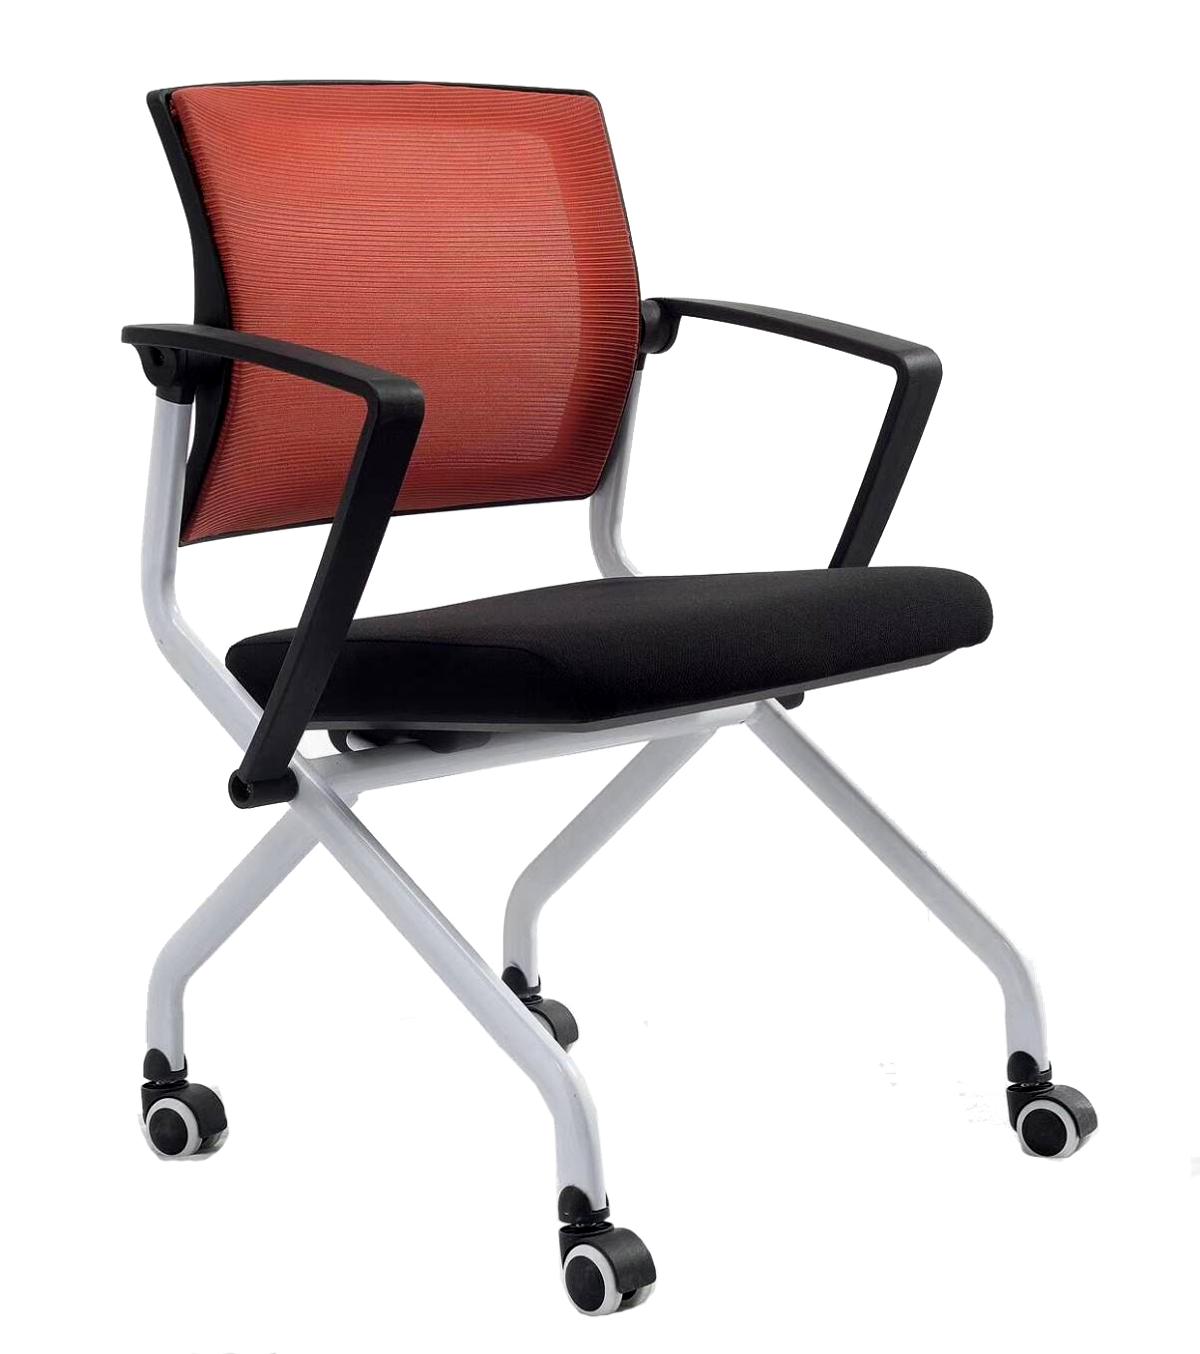 เก้าอี้เล็กเชอร์ รุ่น MU-ST88